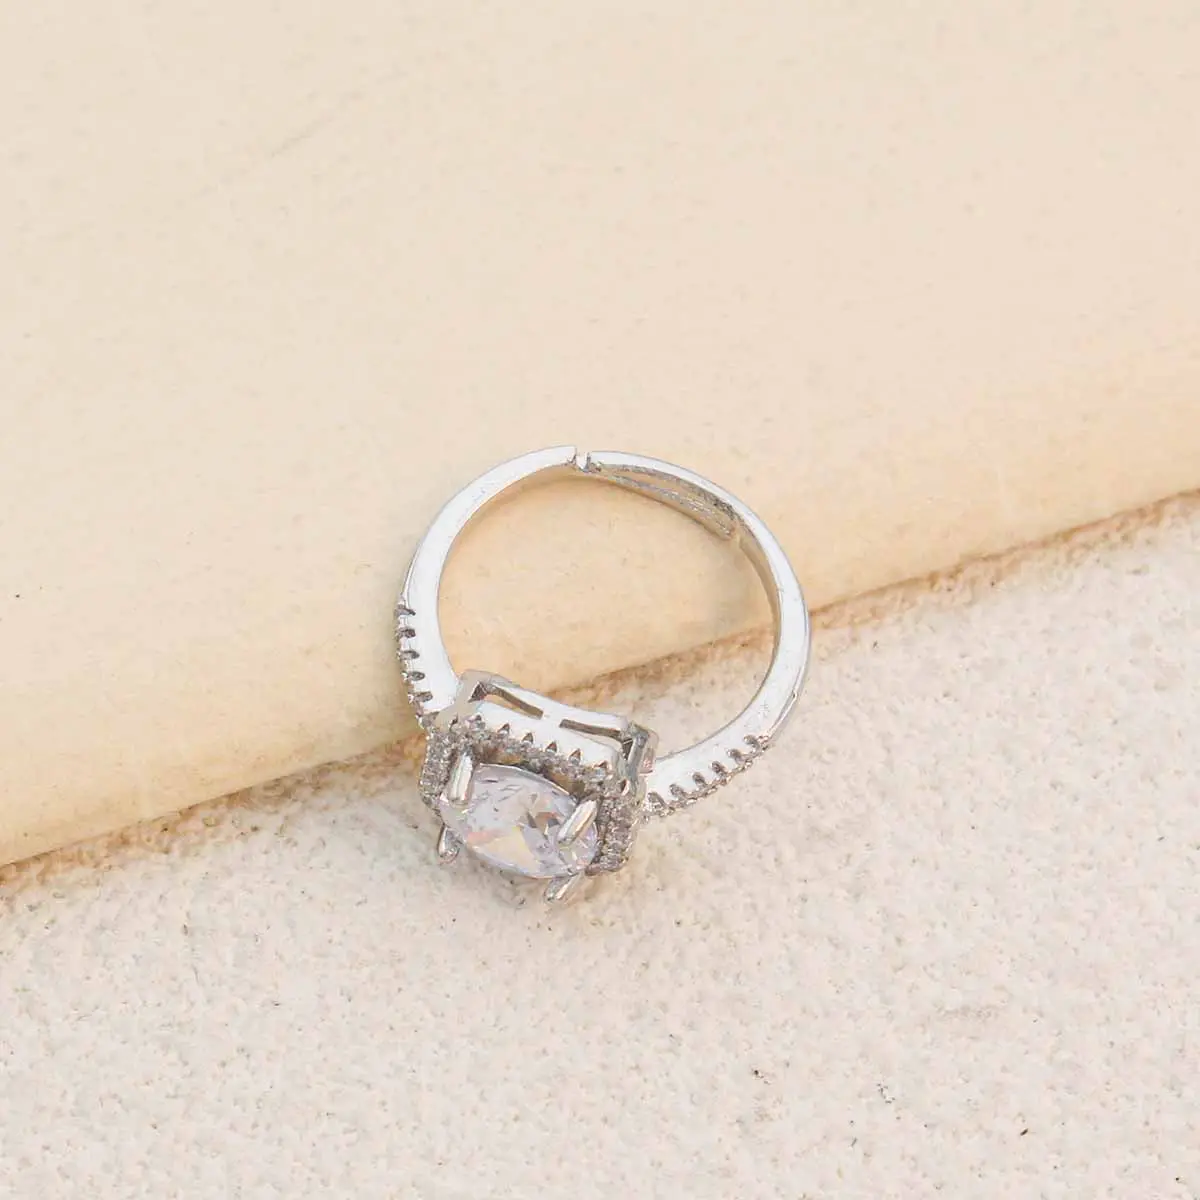 Женское модное кольцо, серебряная медная шестиугольная квадратная инкрустация цирконием, настраиваемая форма для снятия тревожности и снятия стресса